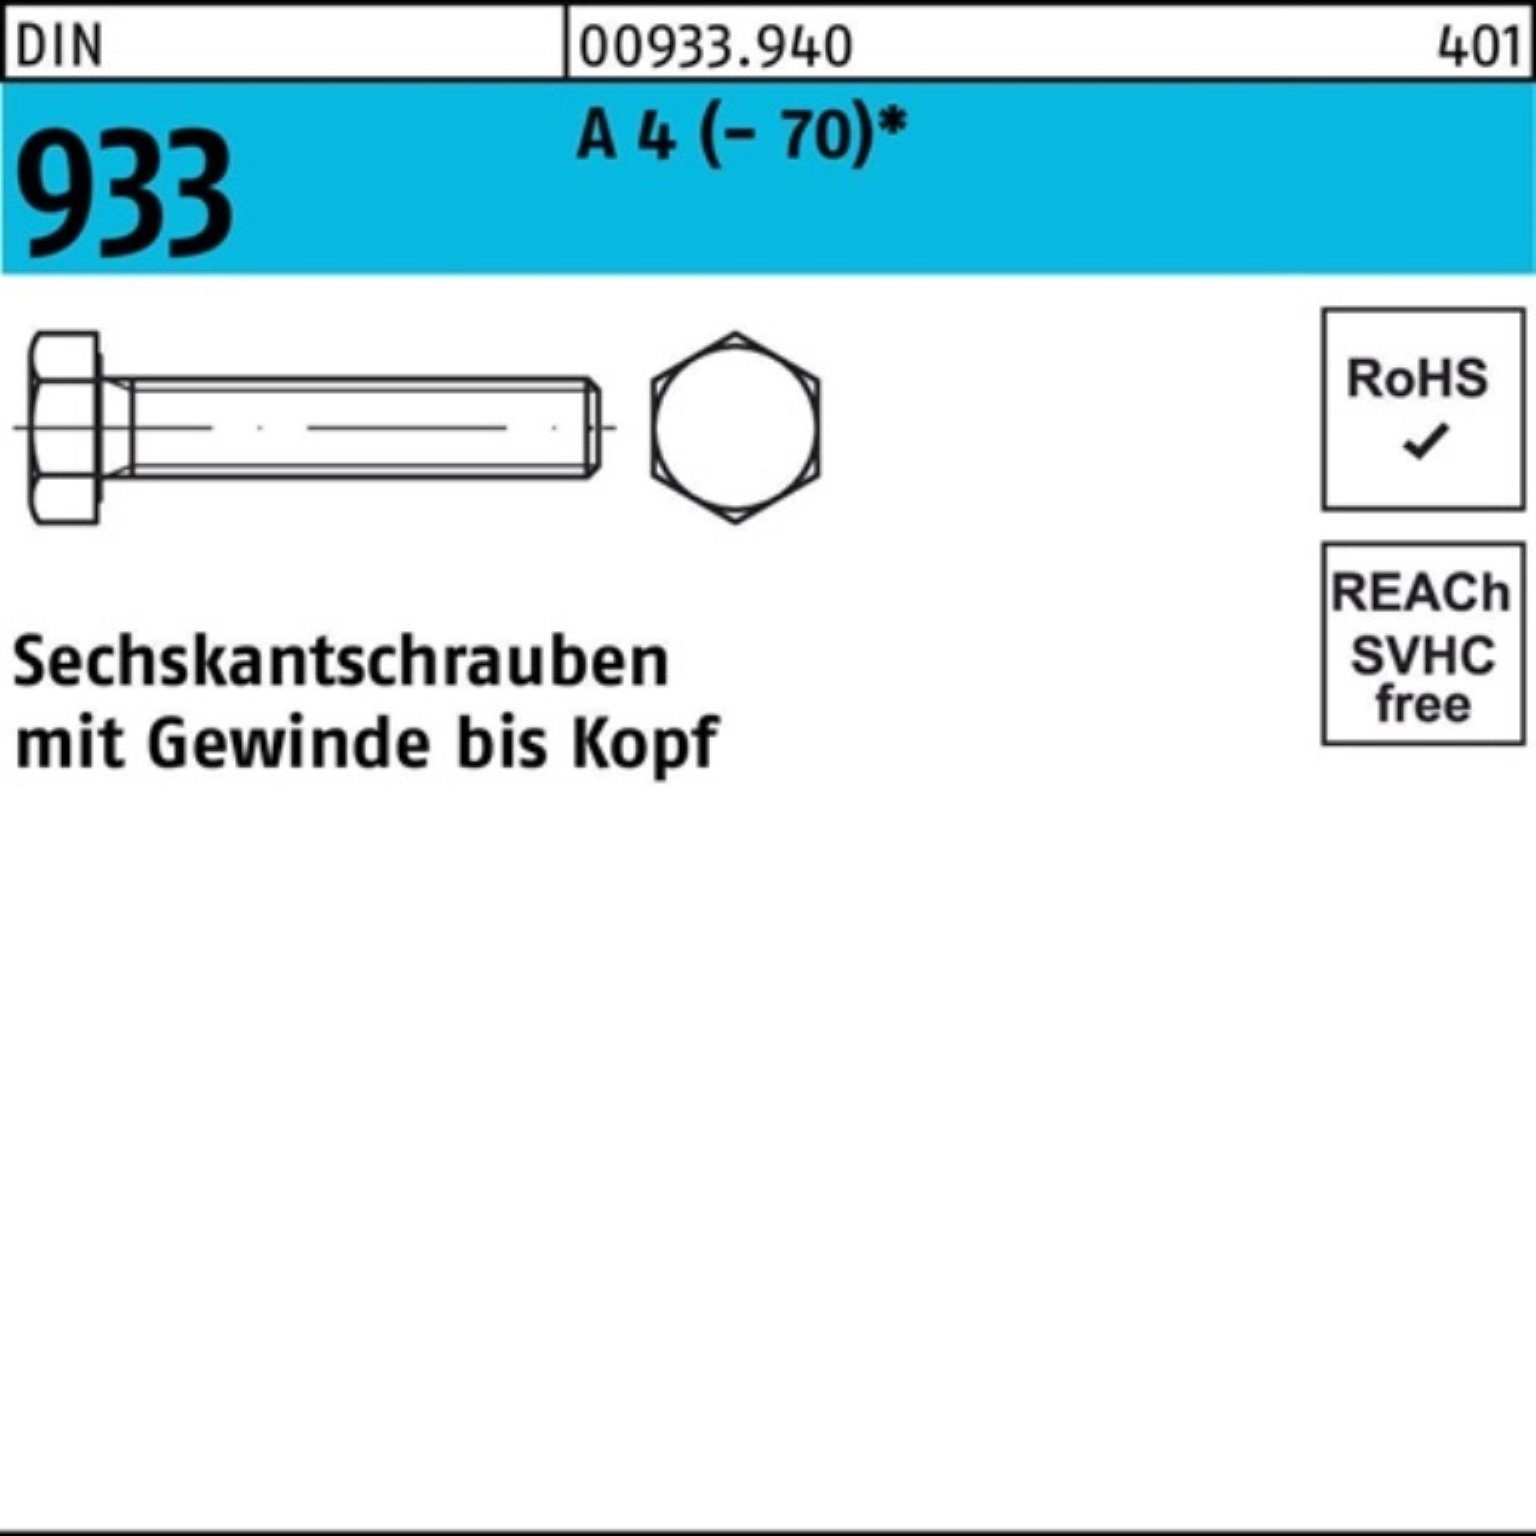 Reyher Sechskantschraube 100er (70) 933 D Pack 45 Stück DIN 4 M8x VG Sechskantschraube 100 A